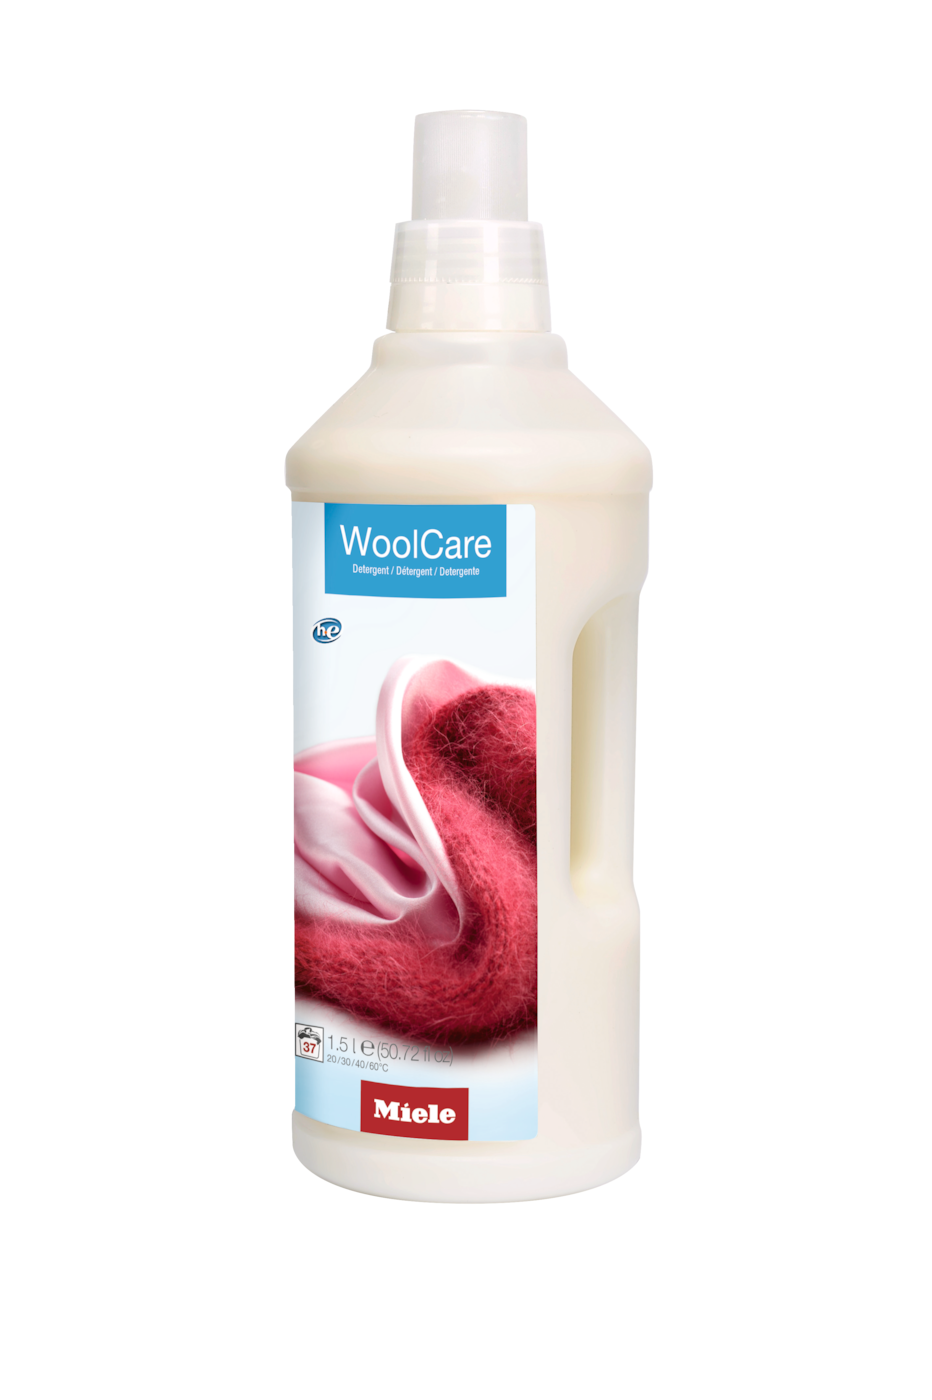 WA WC 1502 L - 1.5 升 WoolCare 纤柔衣物洗涤剂 